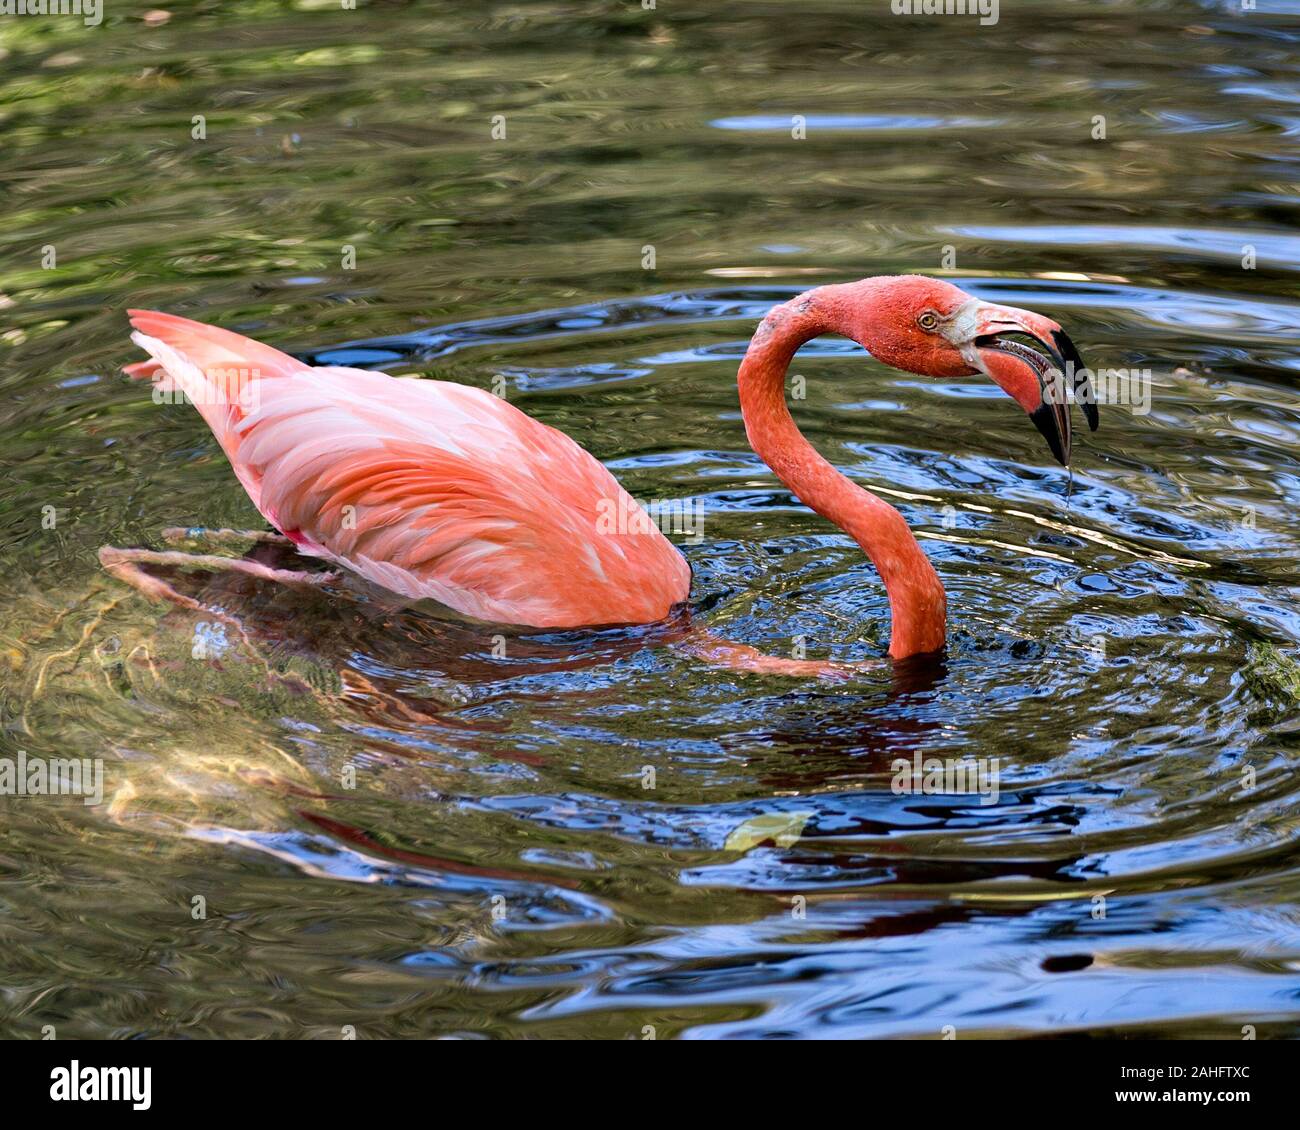 Flamingo Drei, Der Im Wasser Mit Ente Steht Stockbild - Bild von federn,  grösser: 61493651